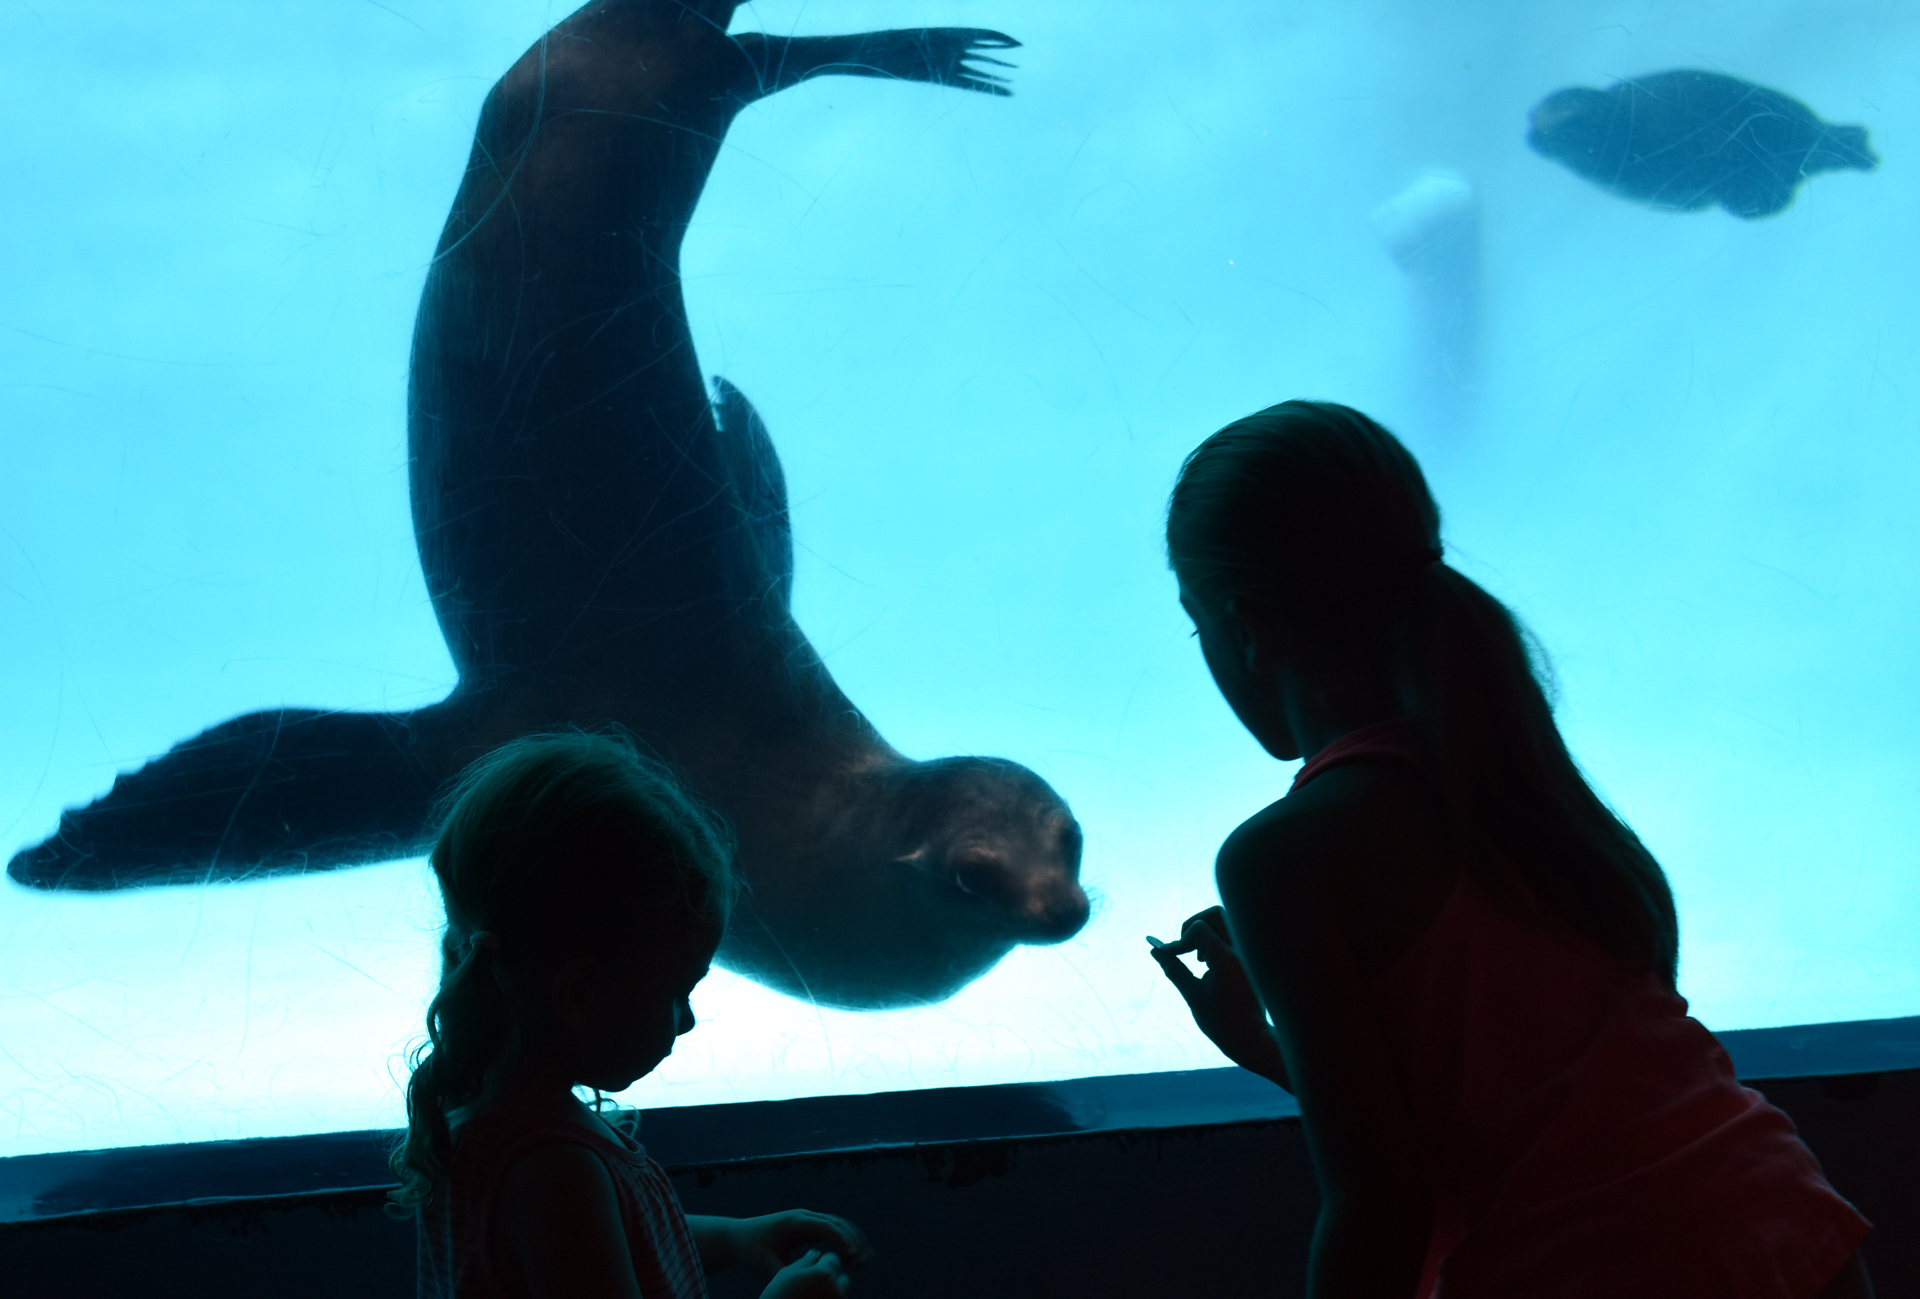 Seals & Sea Lions - Mystic Aquarium